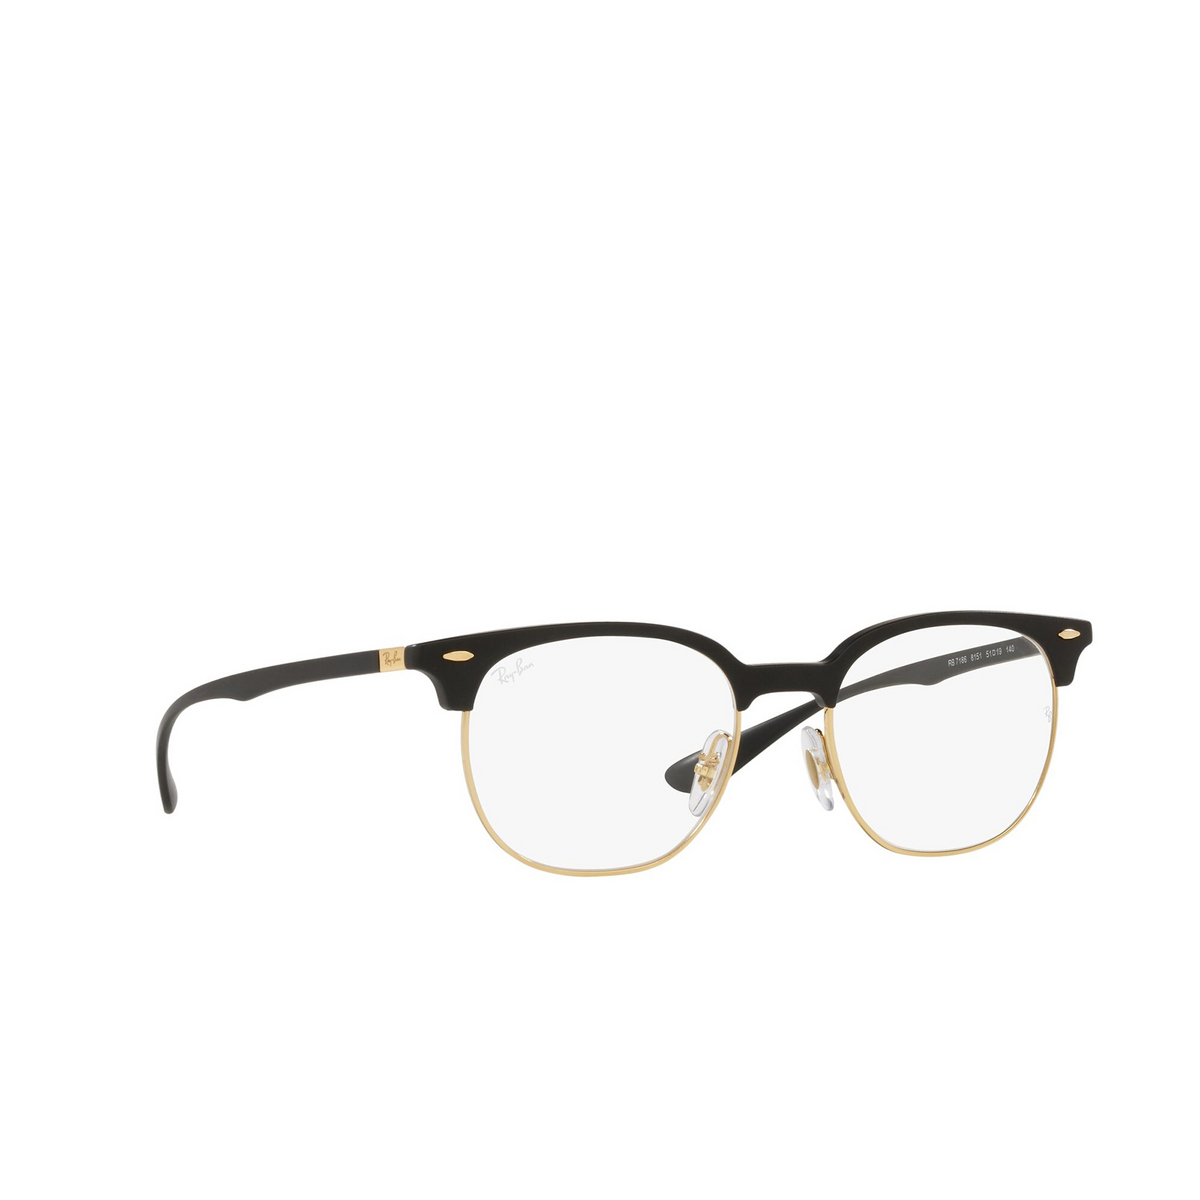 Ray-Ban® Square Eyeglasses: RX7186 color Sand Black 8151 - three-quarters view.